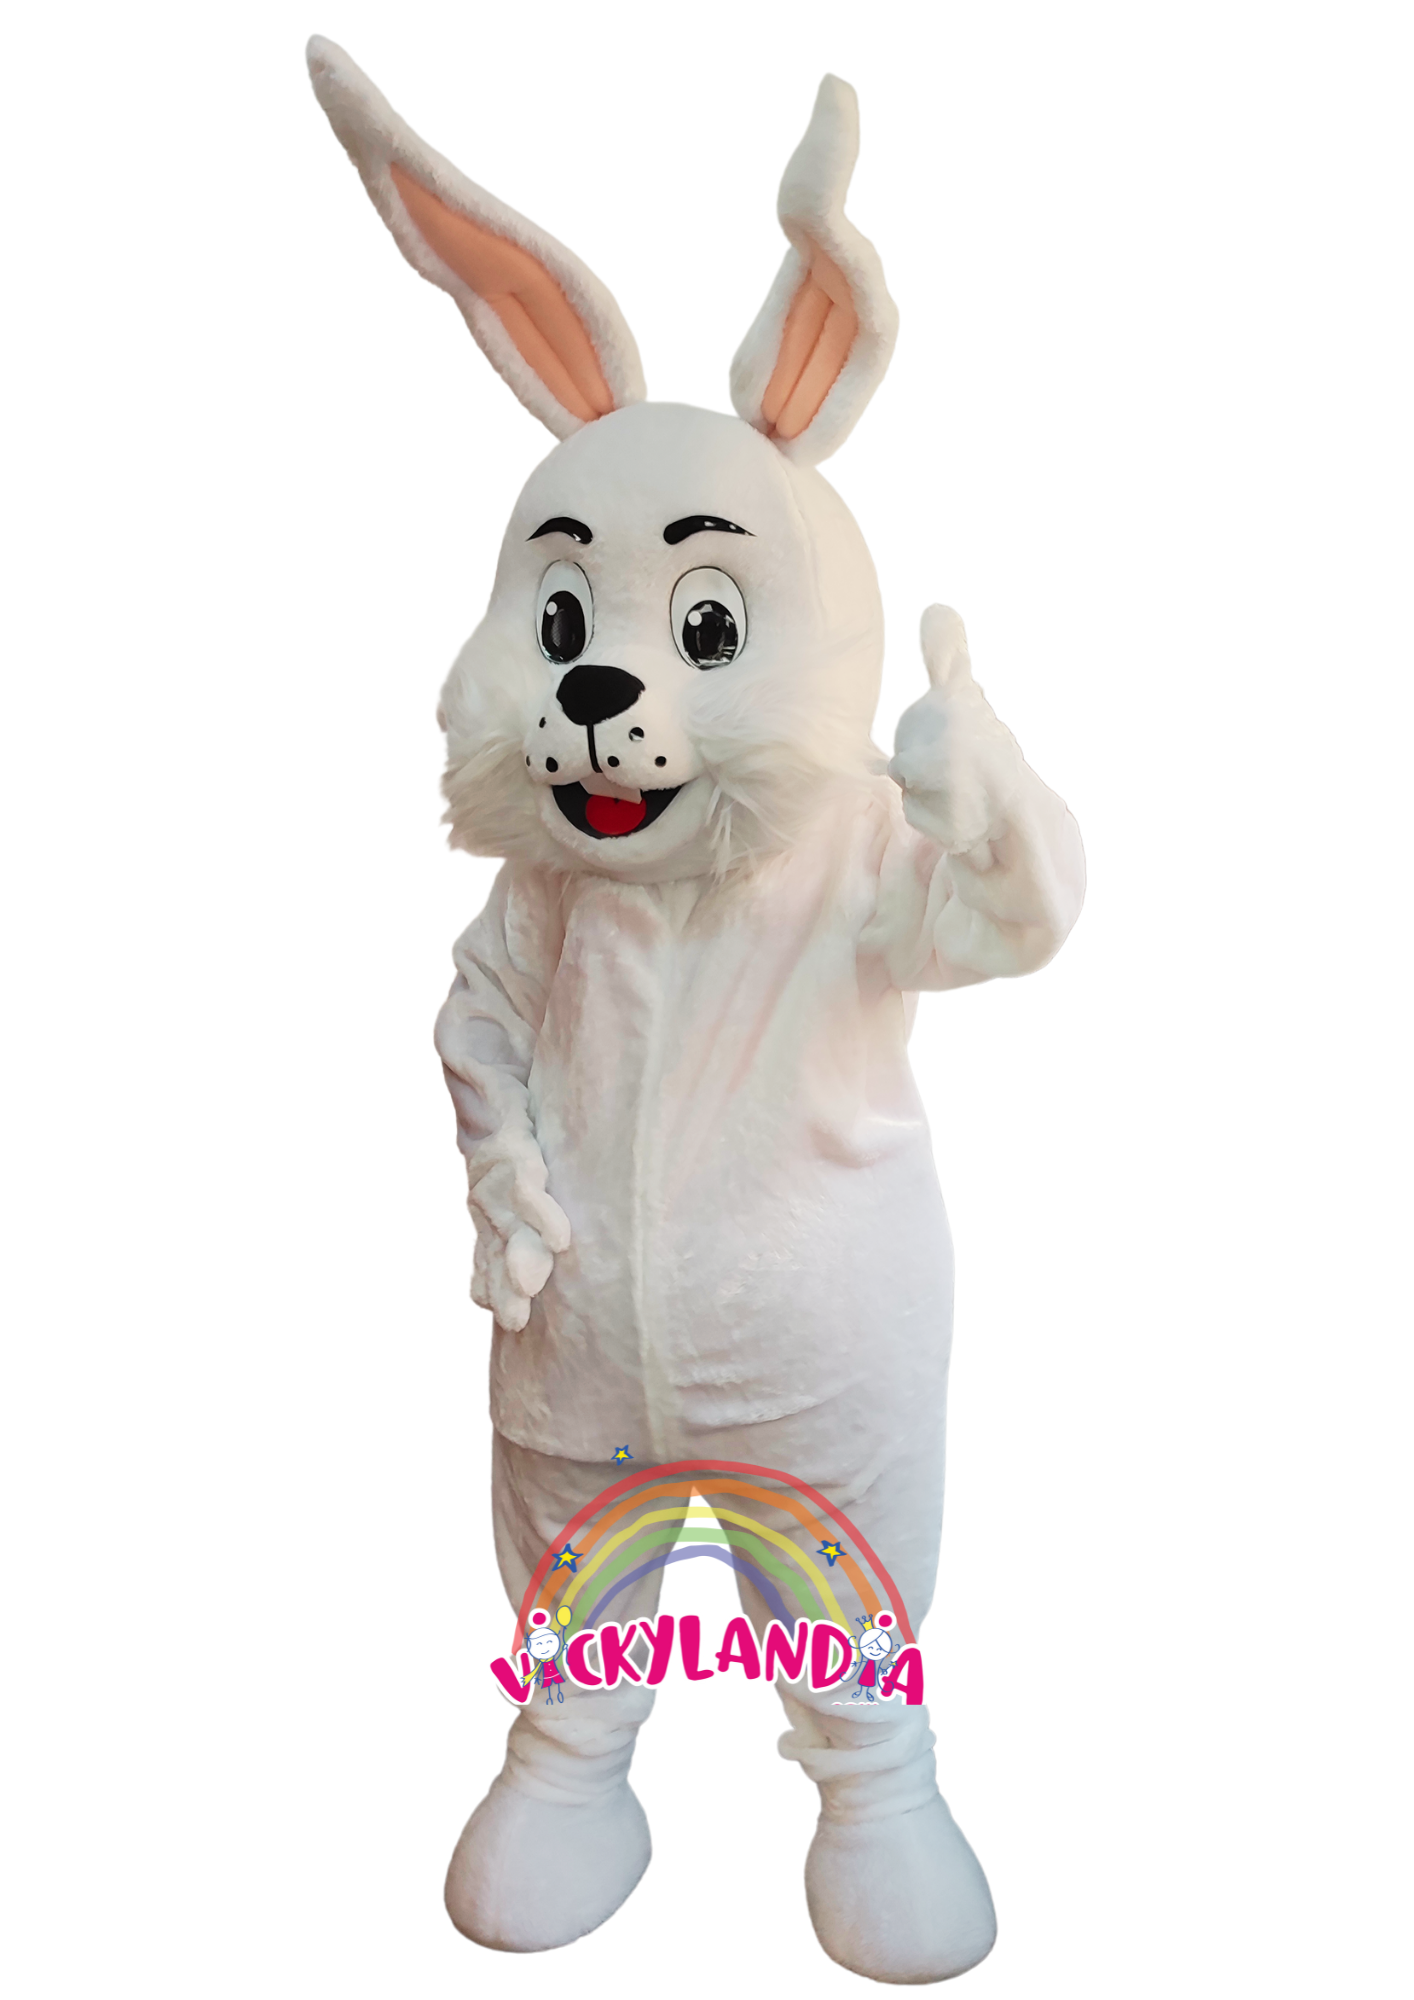 Descubre la magia de nuestro muñeco publicitario de Conejo Blanco en Vickylandia. Son disfraces cabezones perfectos para fiestas infantiles, shows, cumpleaños, estrategias publicitarias, espectáculos, cabalgatas y cualquier tipo de evento.